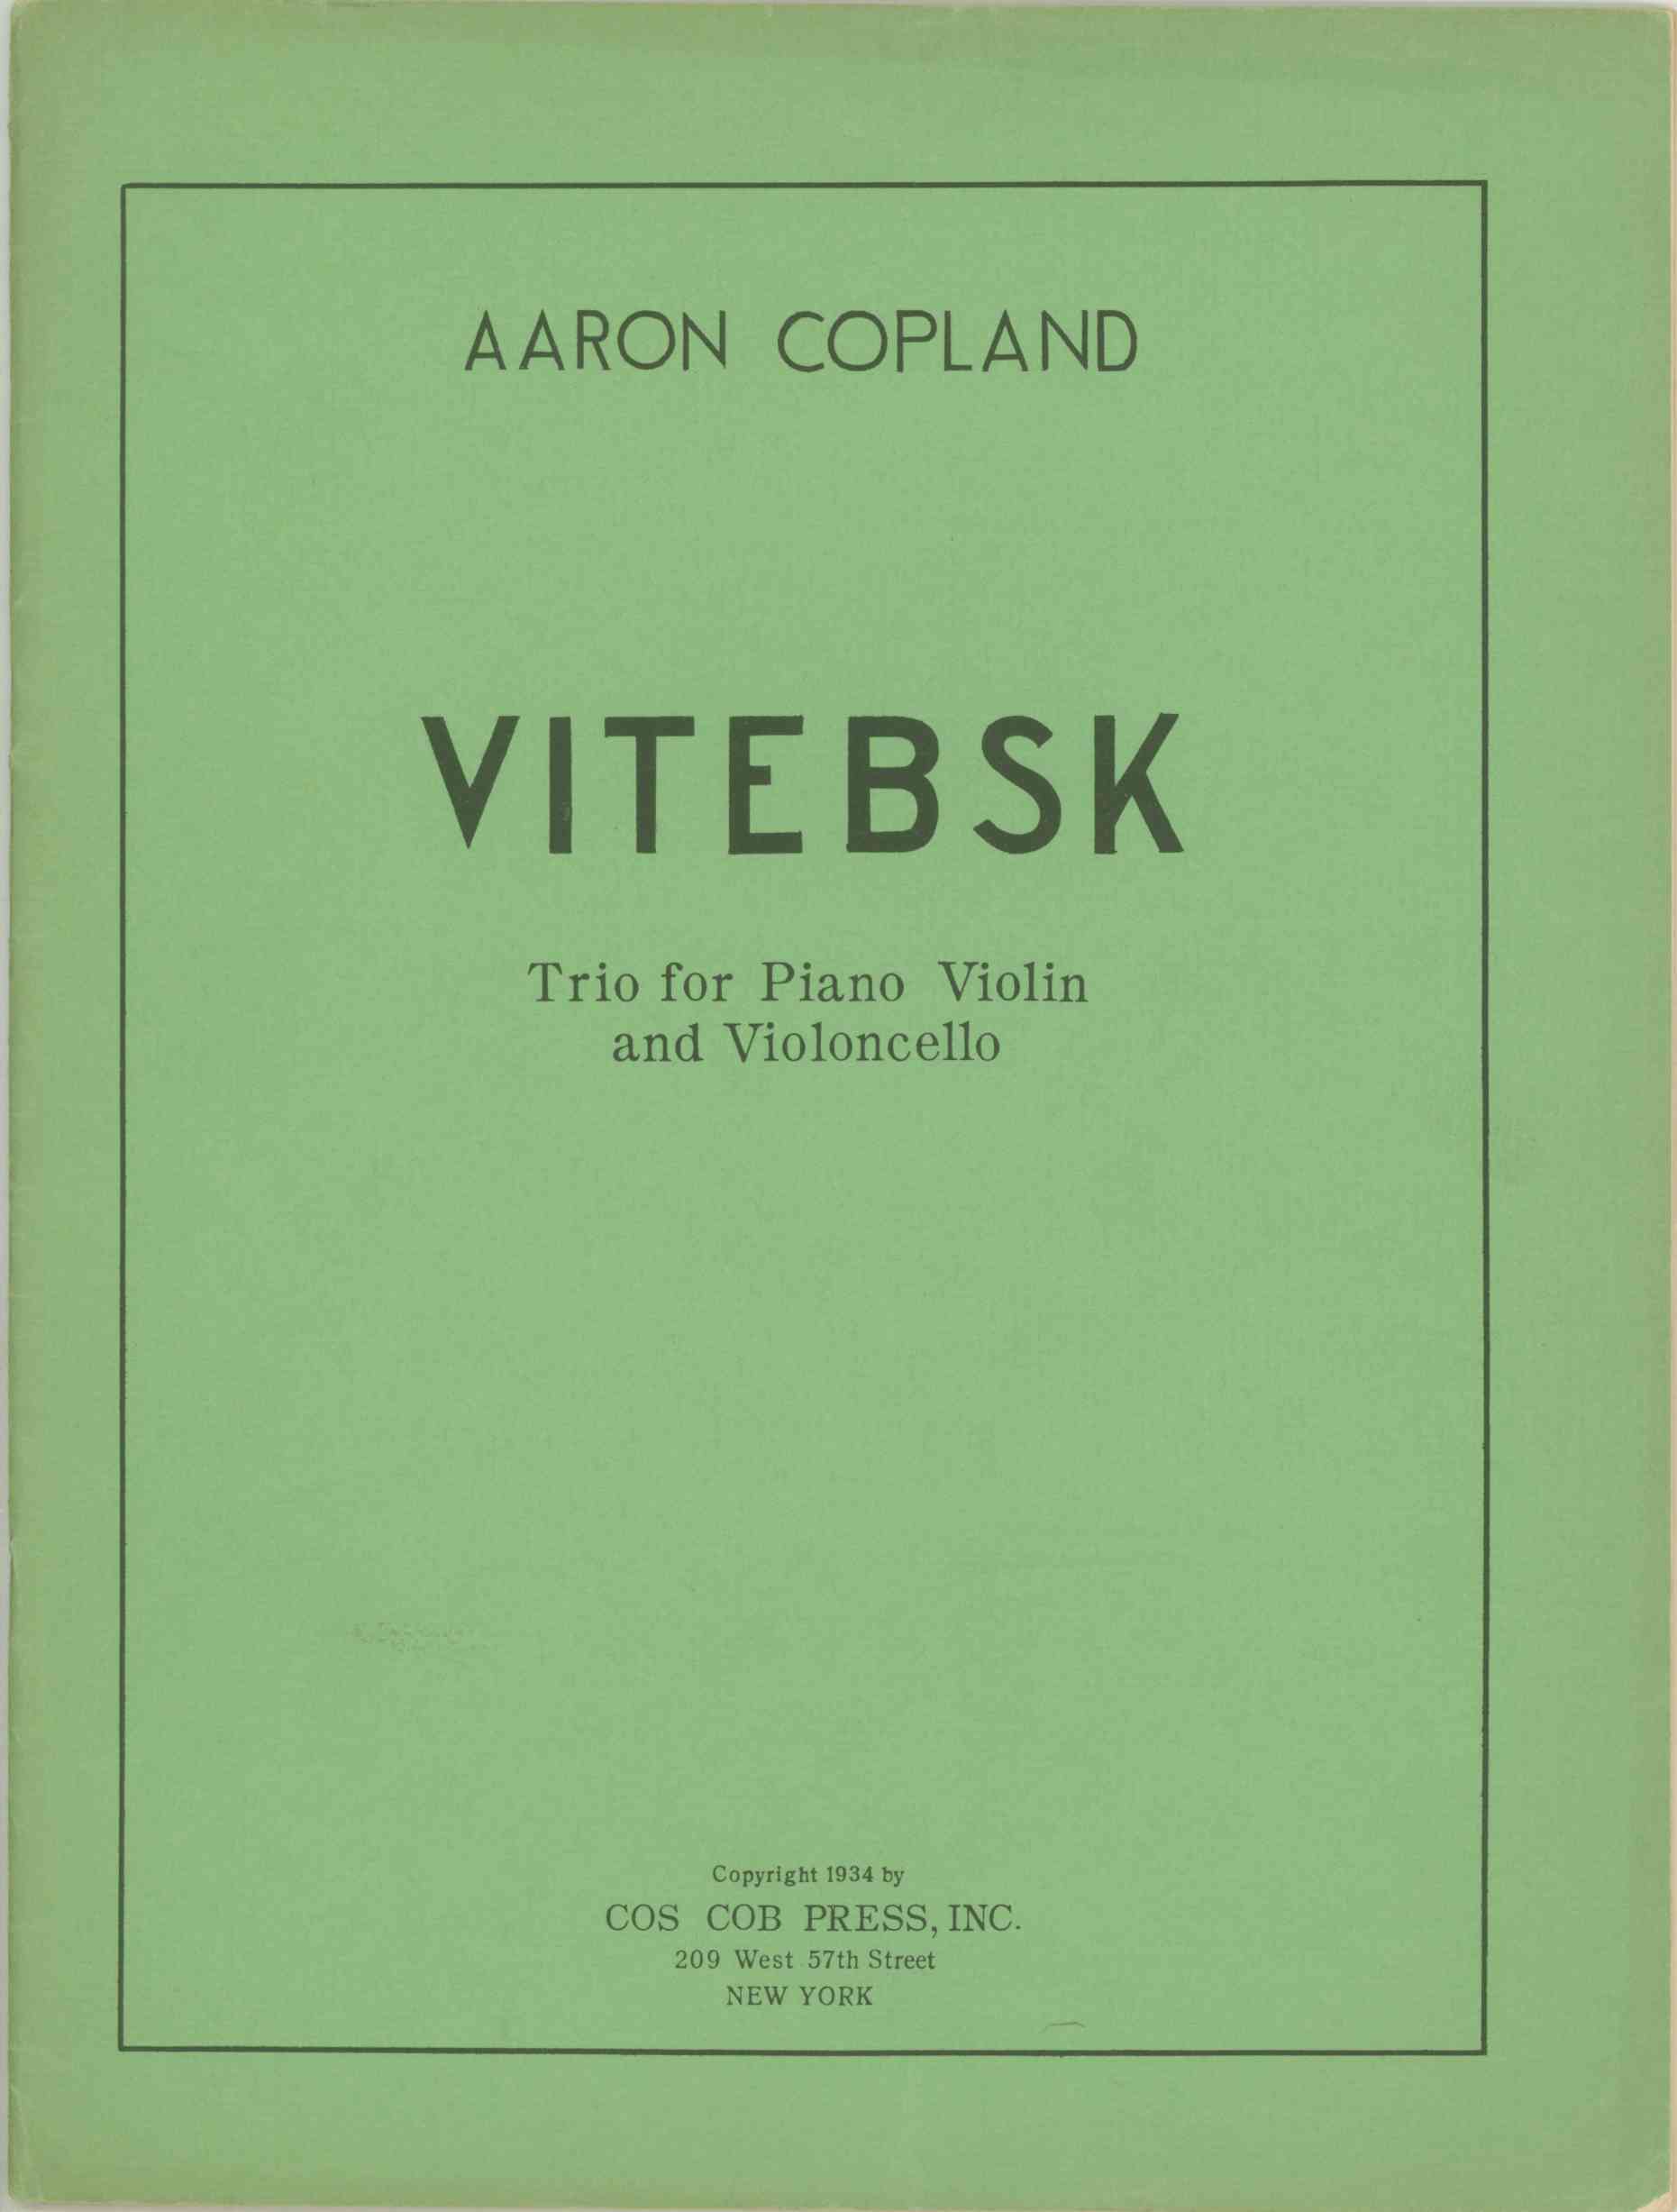 Copland, Aaron - Vitebsk. Trio for Piano, violin and Violoncello.